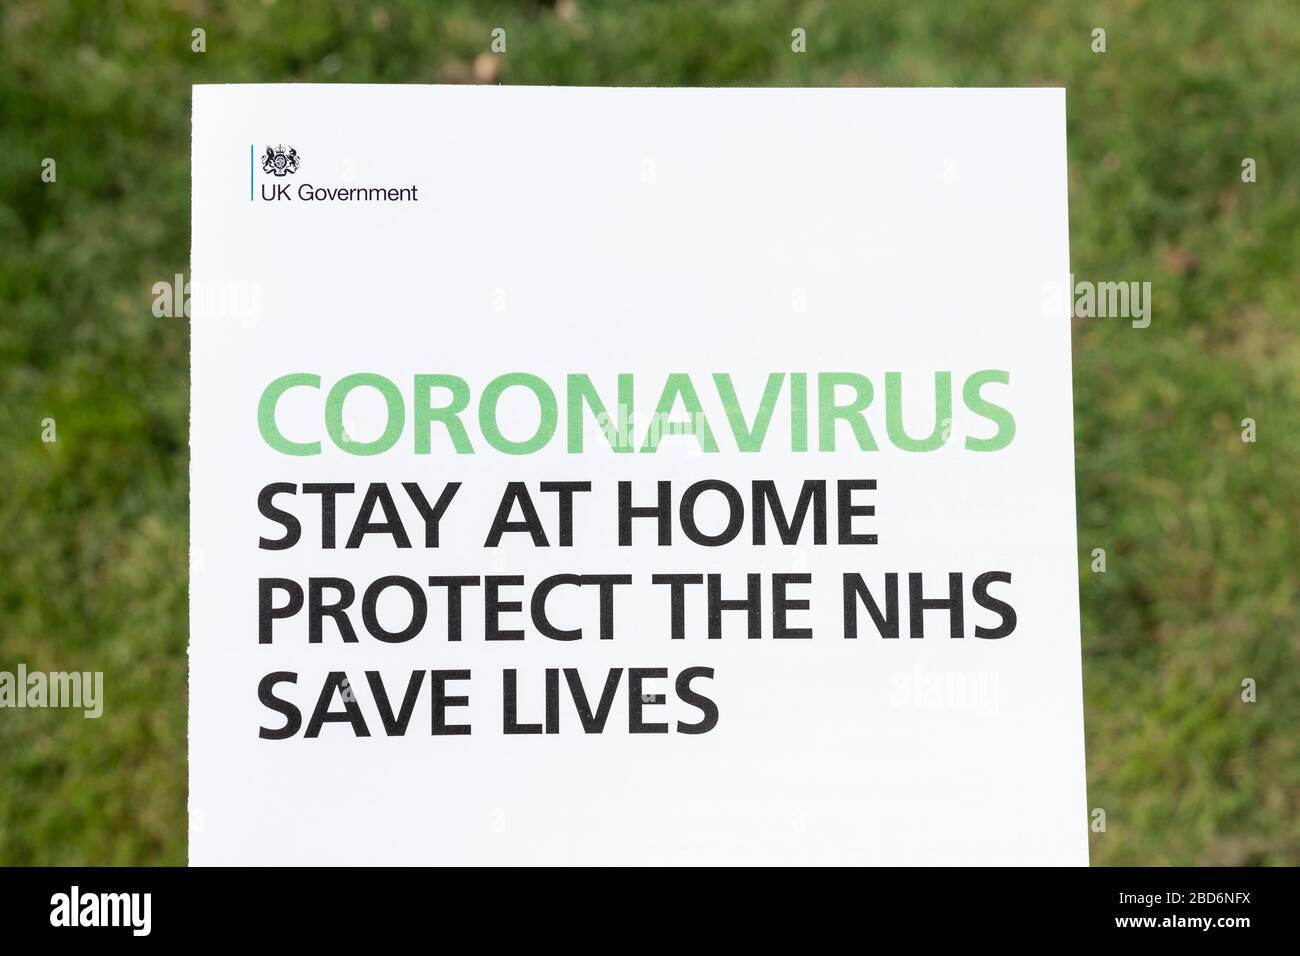 Coronavirus rester à la maison protéger le NHS sauver des vies - dépliant d'information du gouvernement britannique sur la pandémie de coronavirus Covid-19, avril 2020 Banque D'Images